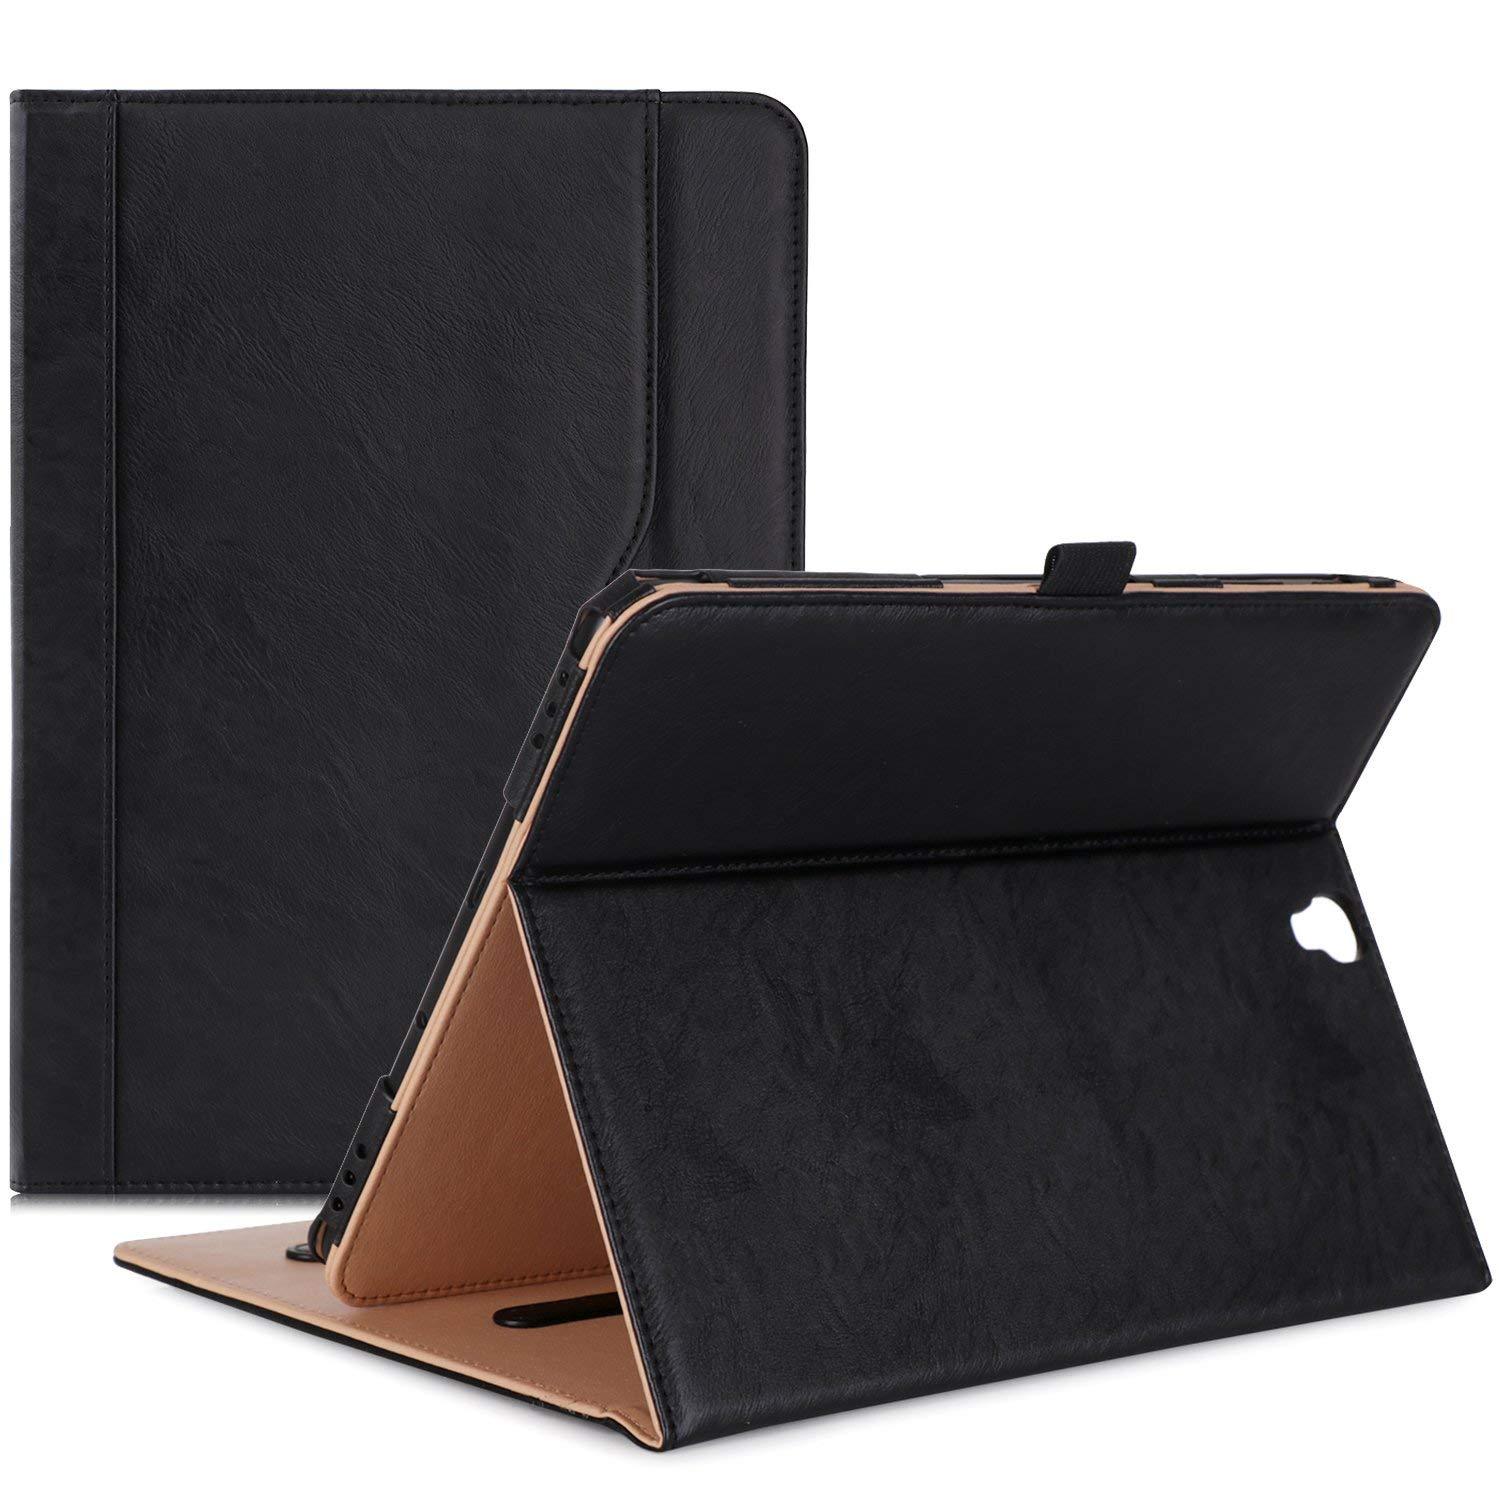 Galaxy Tab S3 9.7 T820 Leather Folio Case